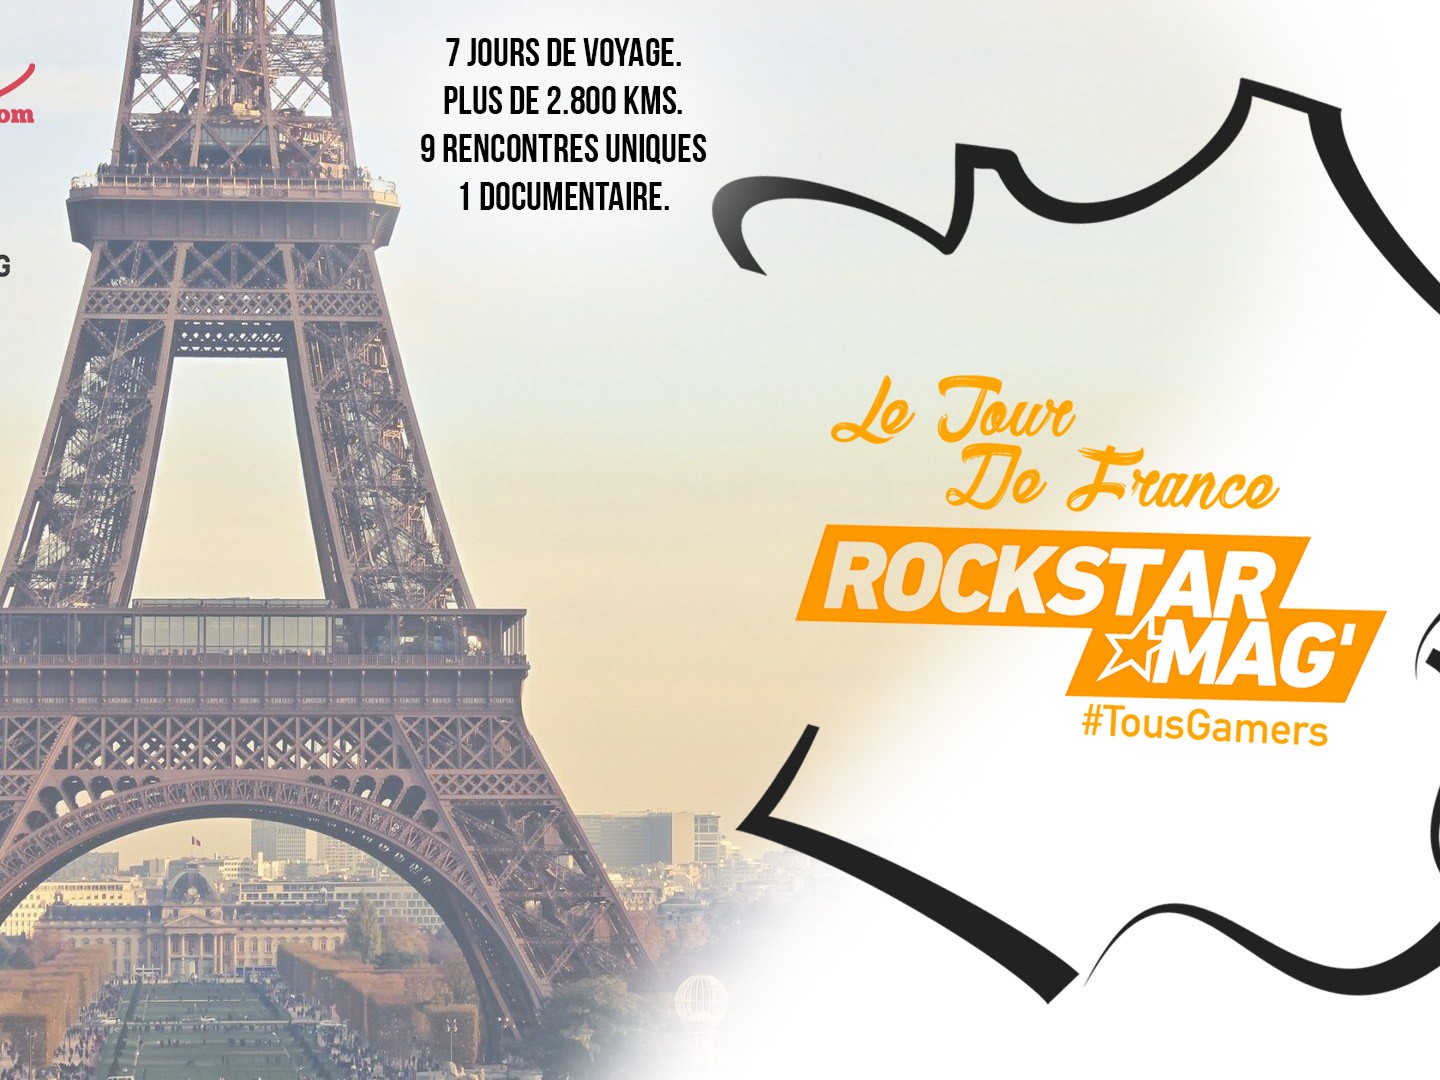 Le Tour de France Rockstar Mag' Dates, Trajets, Infos